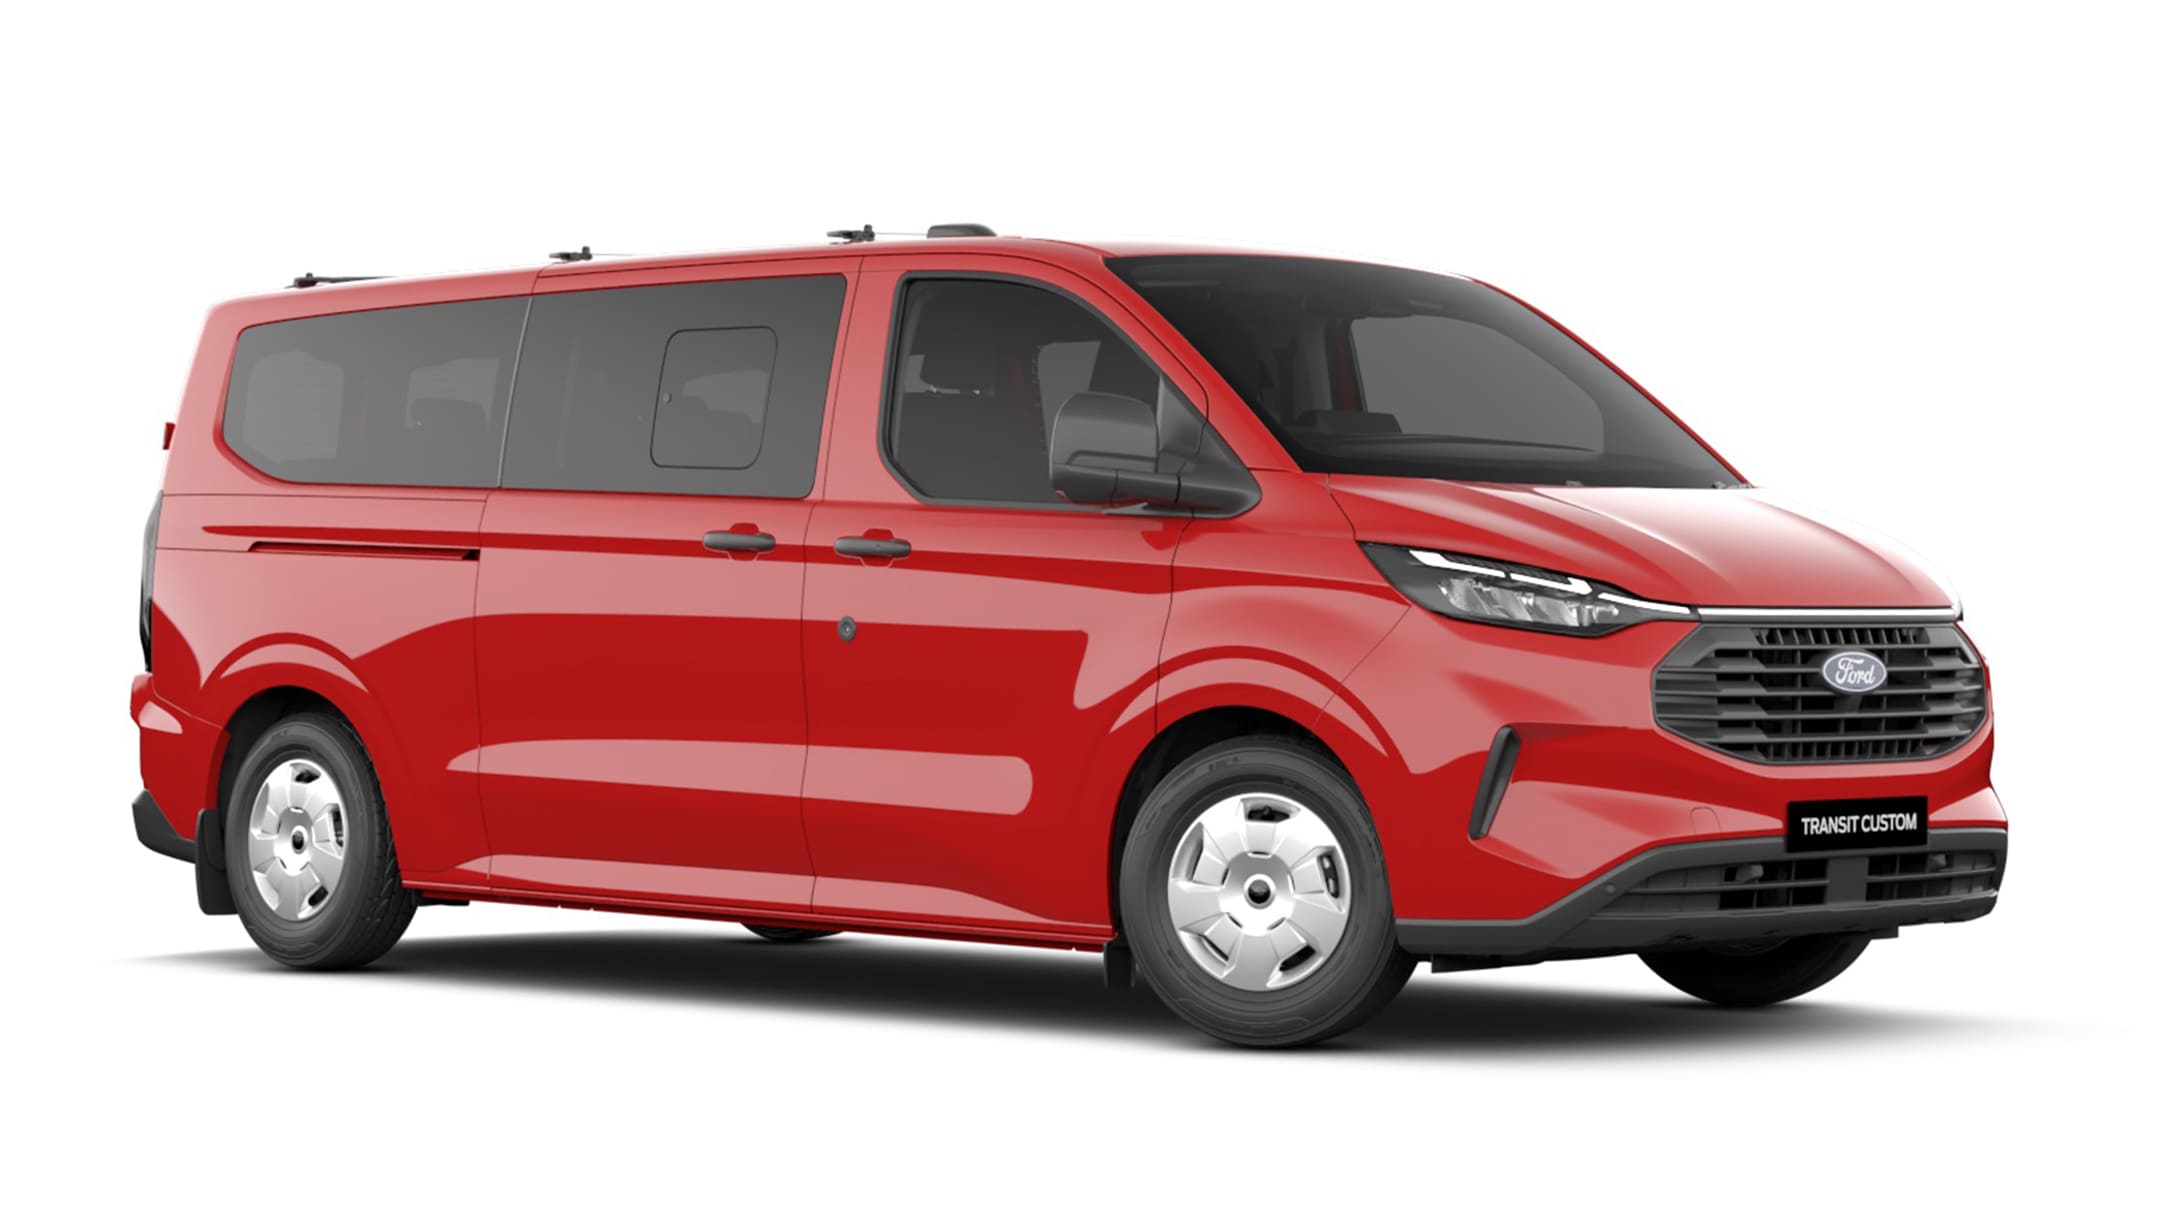 Ford Transit Custom Kombi in Rot. Dreiviertelansicht, stehend vor einem weißen Hintergrund.